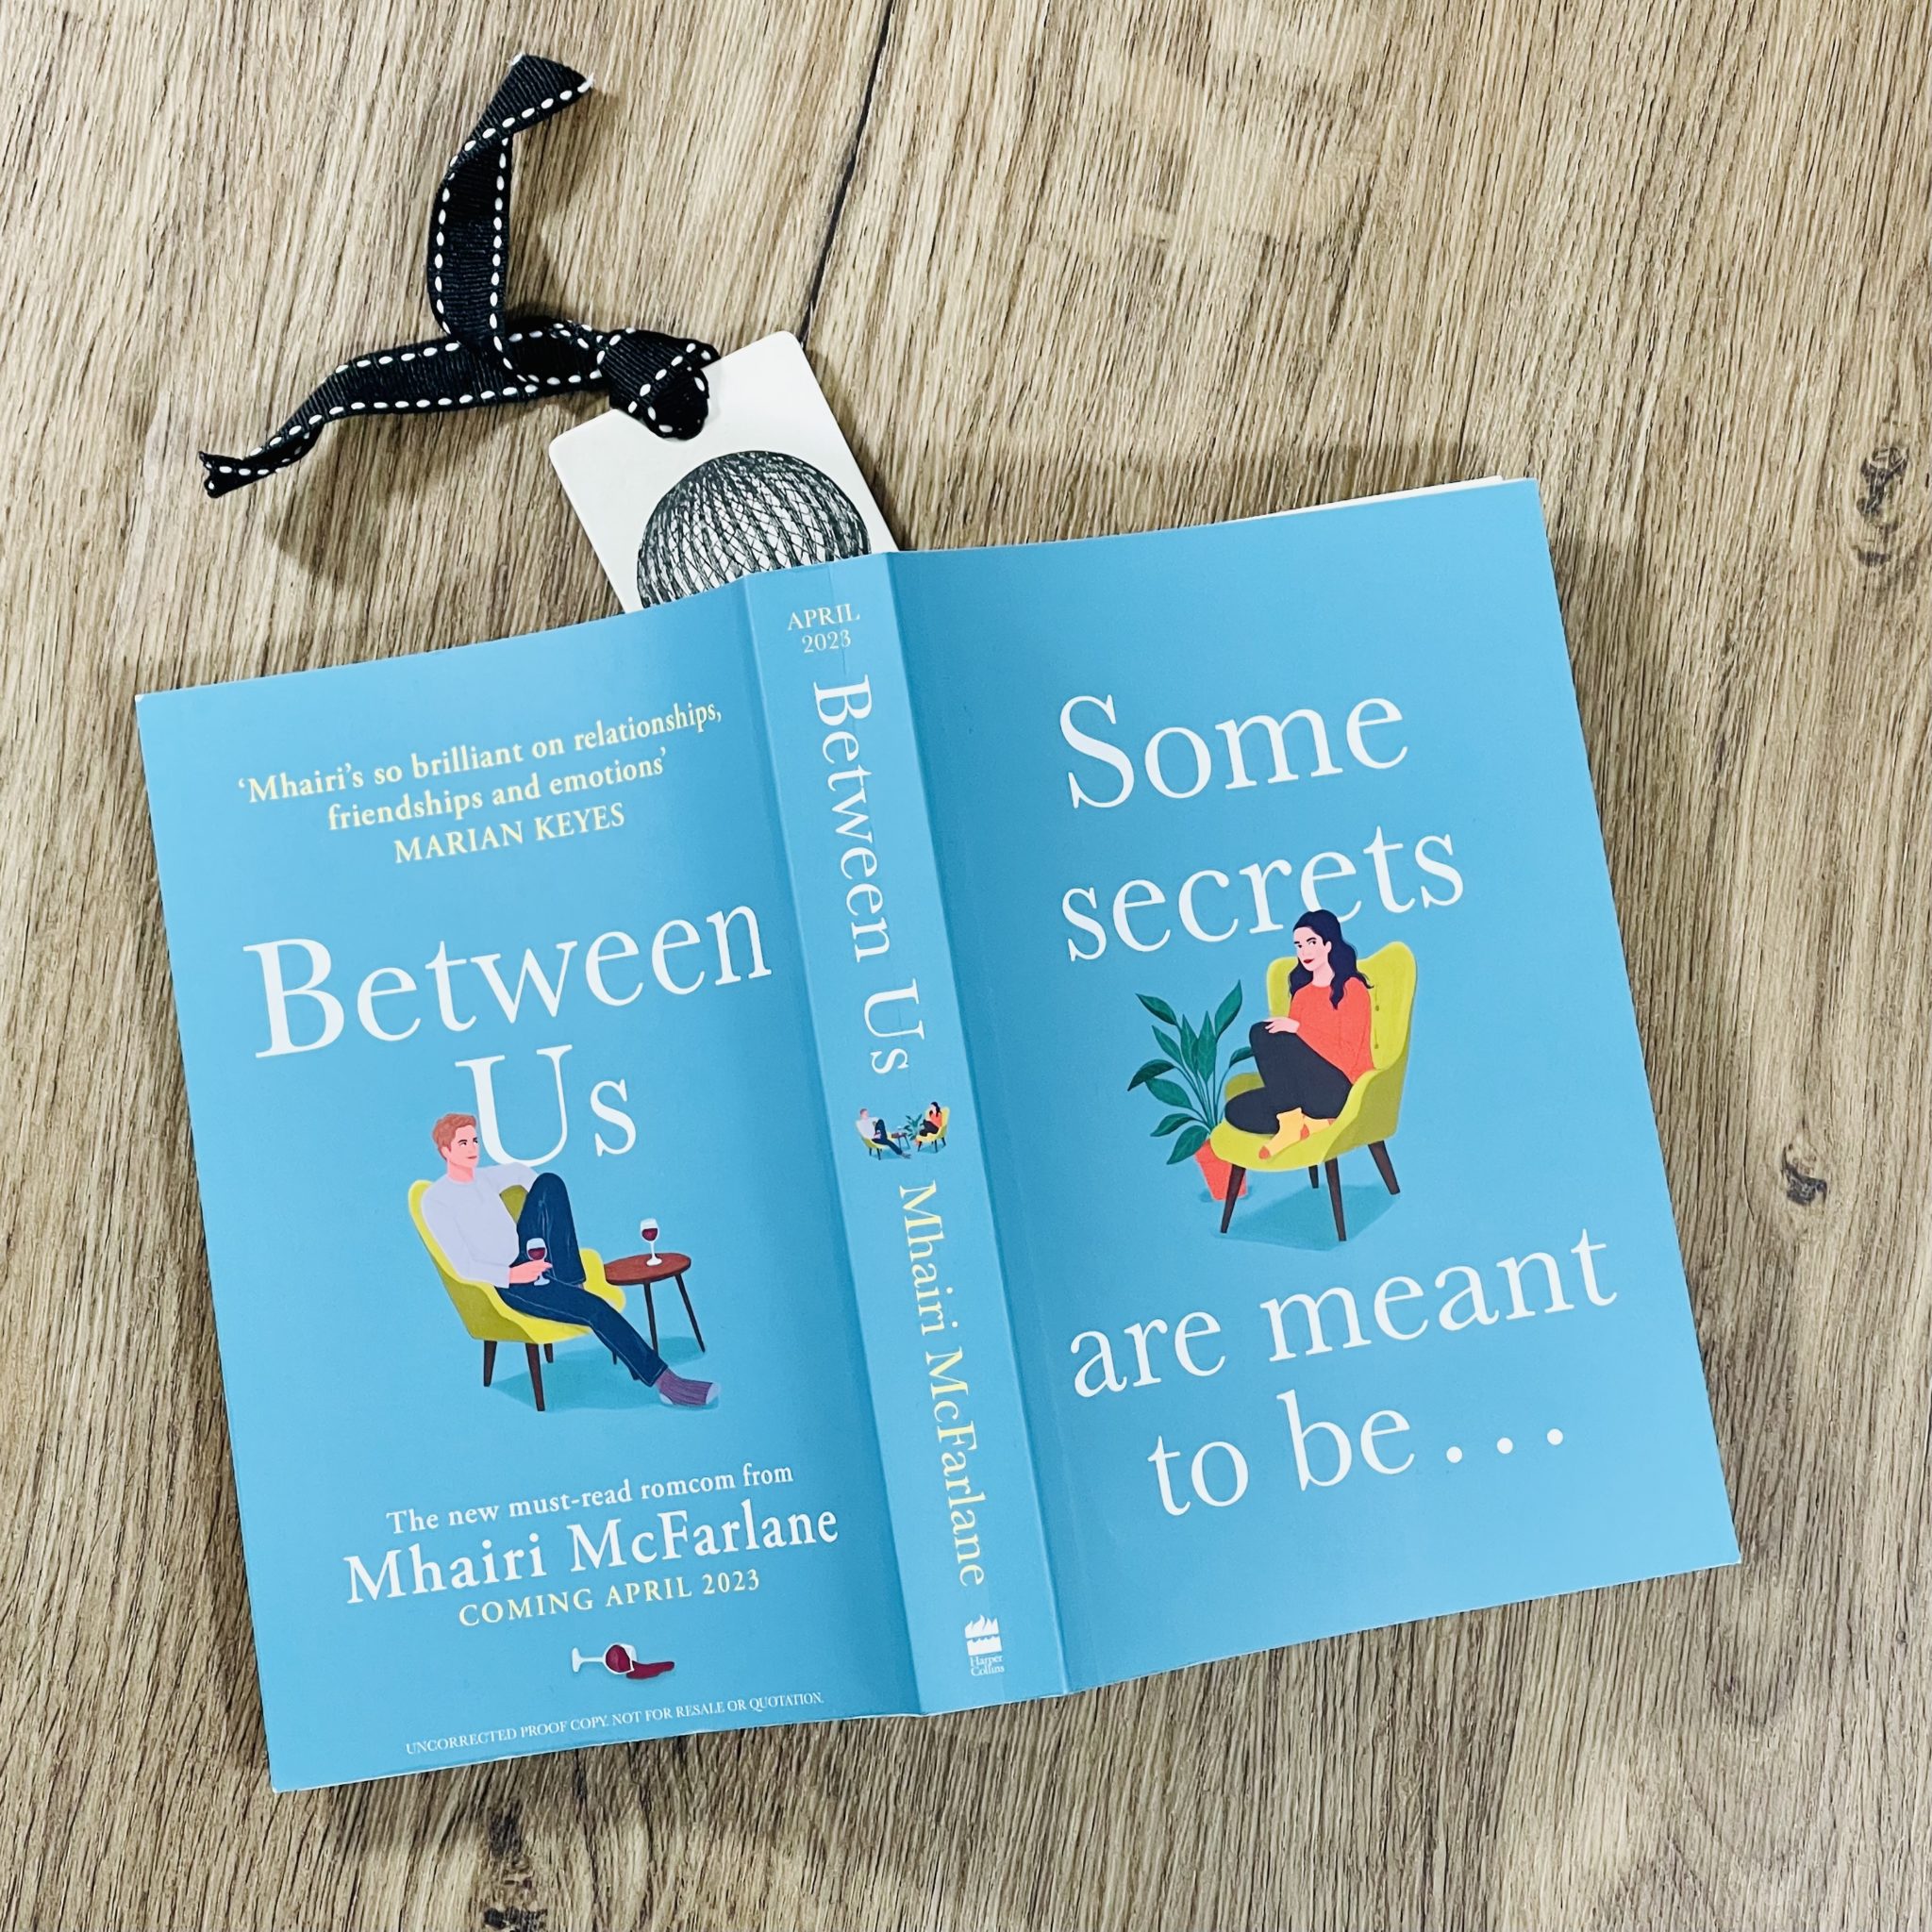 Between Us by Mhairi McFarlane - Tea Leaves & Reads